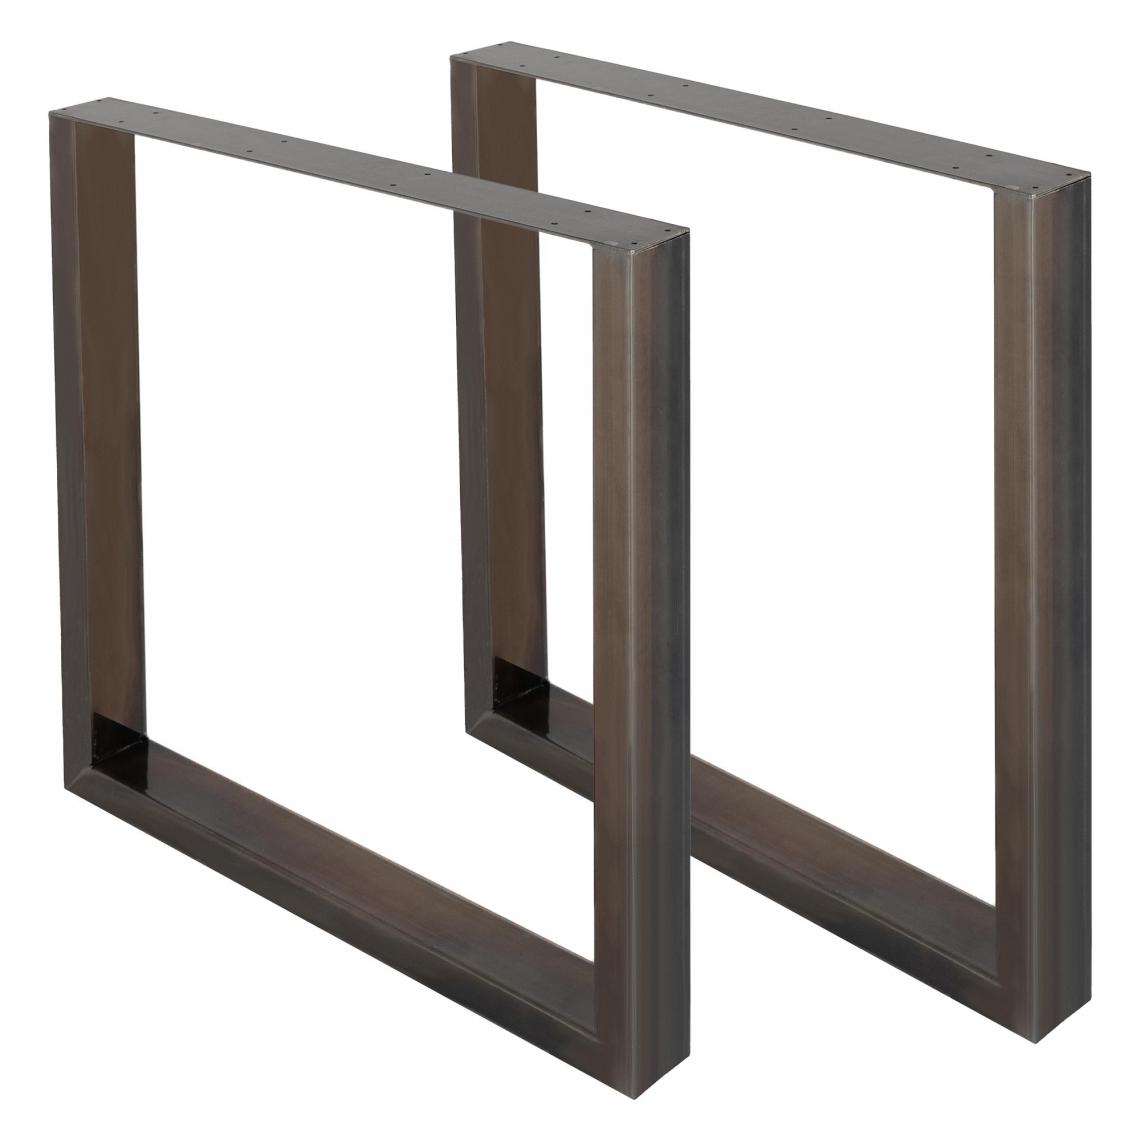 Ecd Germany - Set 2 pieds de table piètement meuble support banc métal anthracite 60 x 72 cm - Pieds & roulettes pour meuble